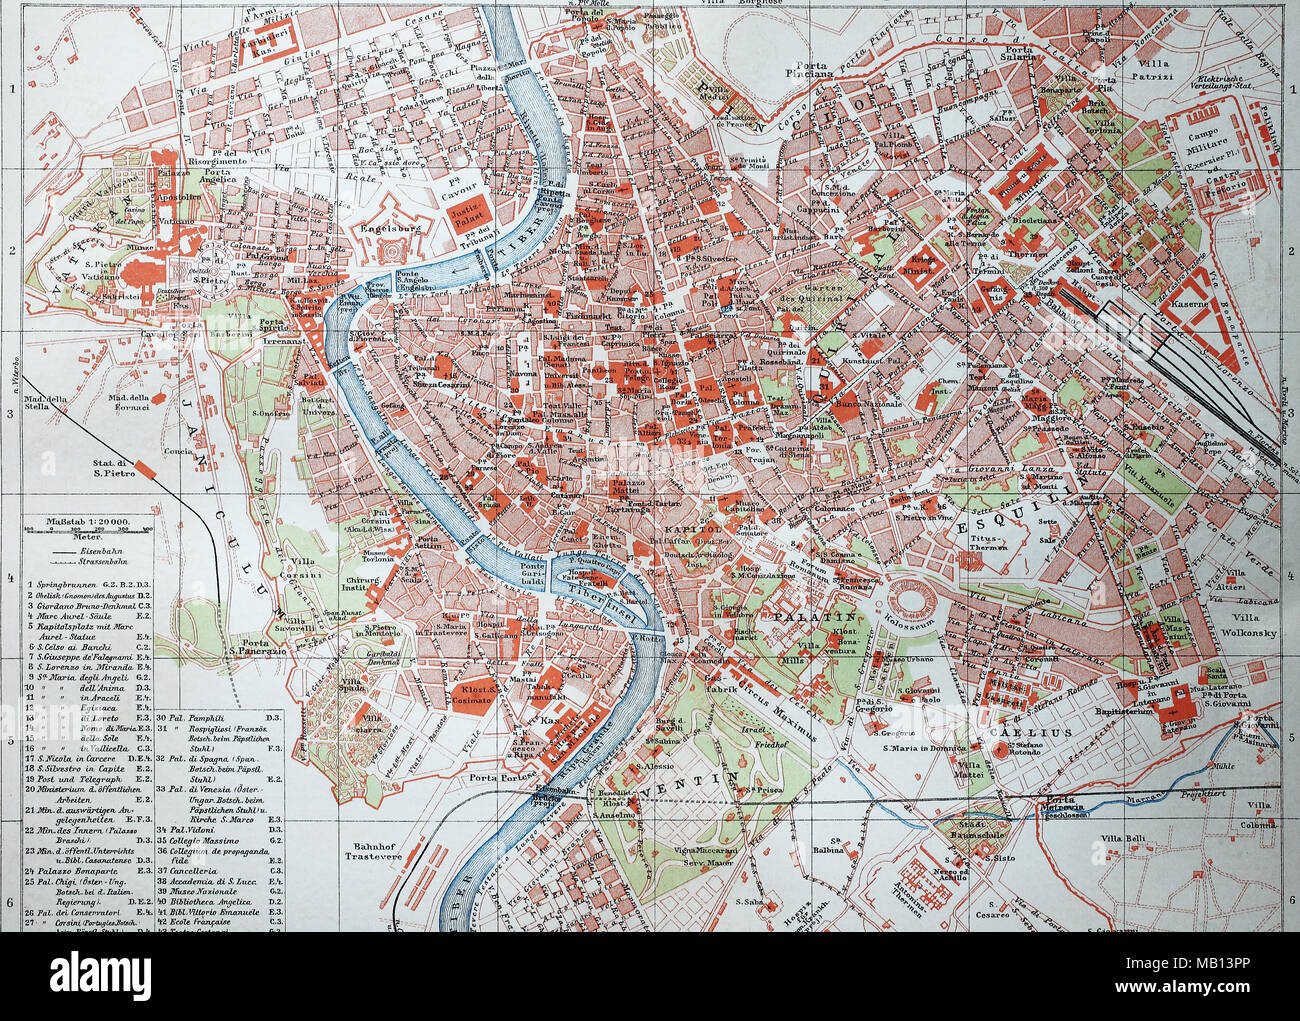 Stadtplan Von Rom Italien 1895 Mapa De La Ciudad De Roma Italia Mejor Reproducción Digital 3324